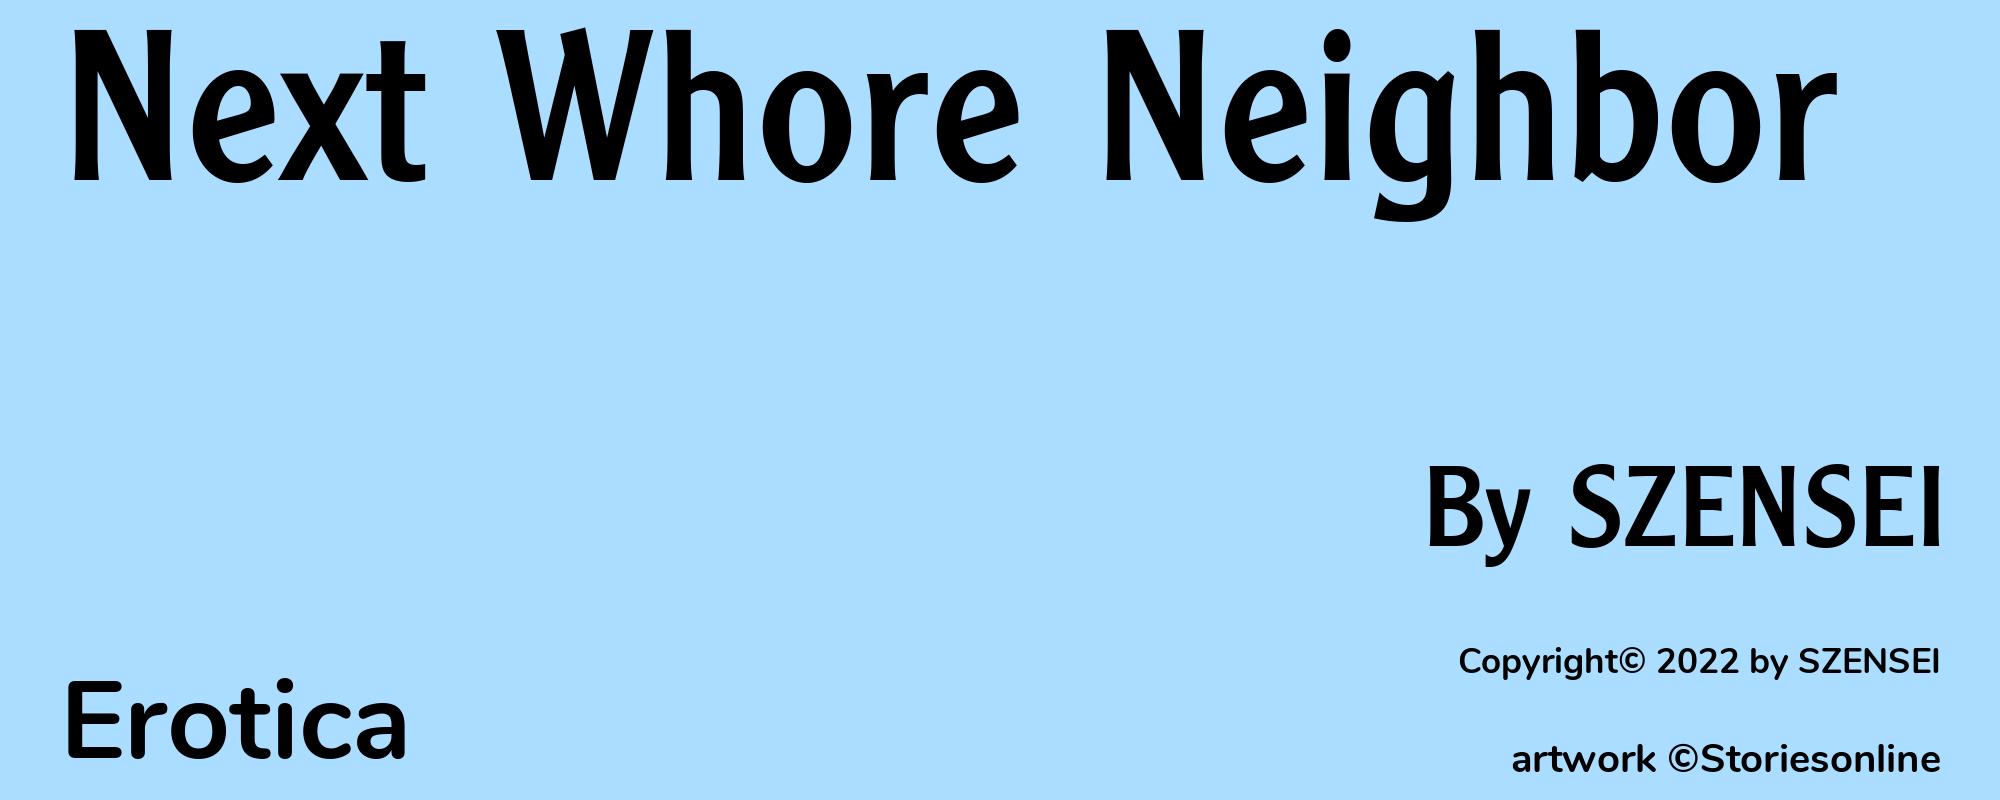 Next Whore Neighbor - Cover